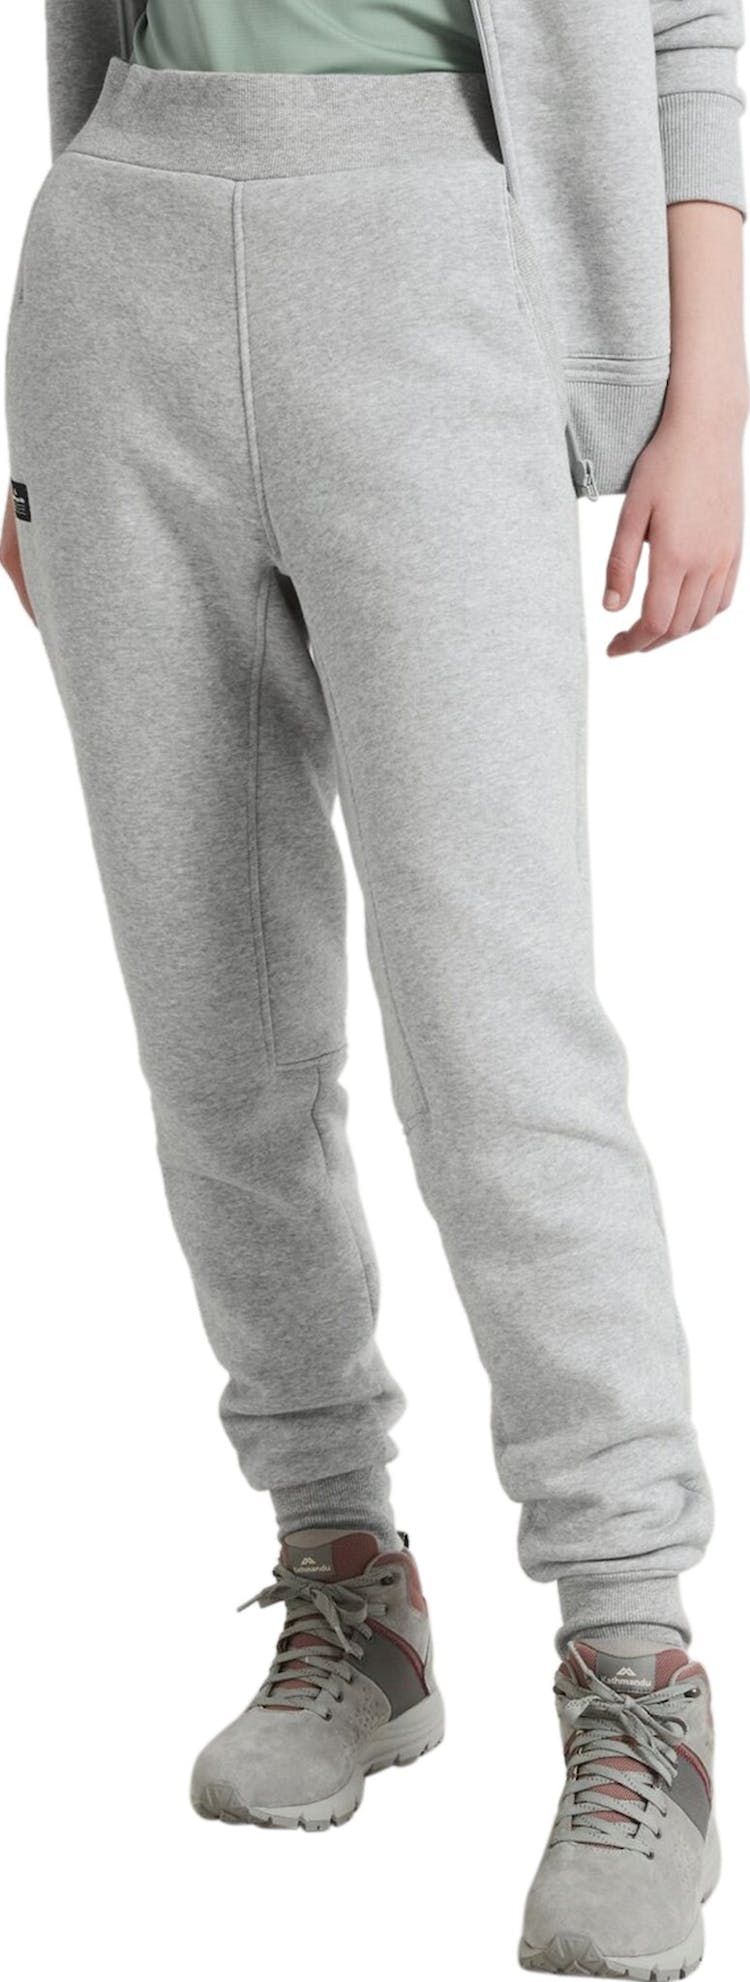 Numéro de l'image de la galerie de produits 6 pour le produit Pantalon de jogging ANY-Time Sweats - Unisexe